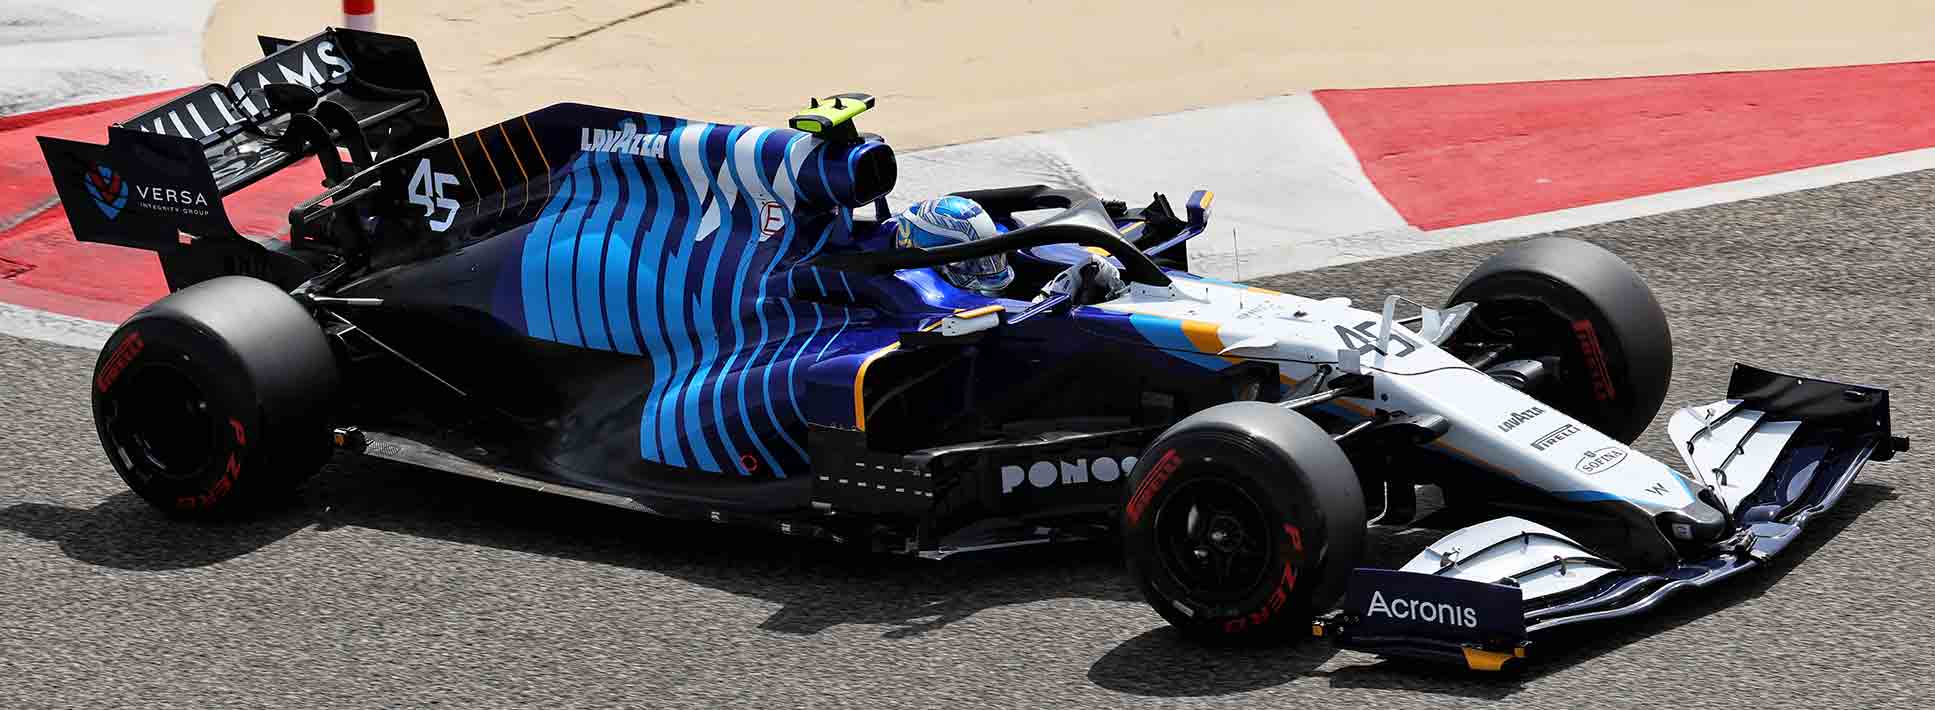 F1_Williams